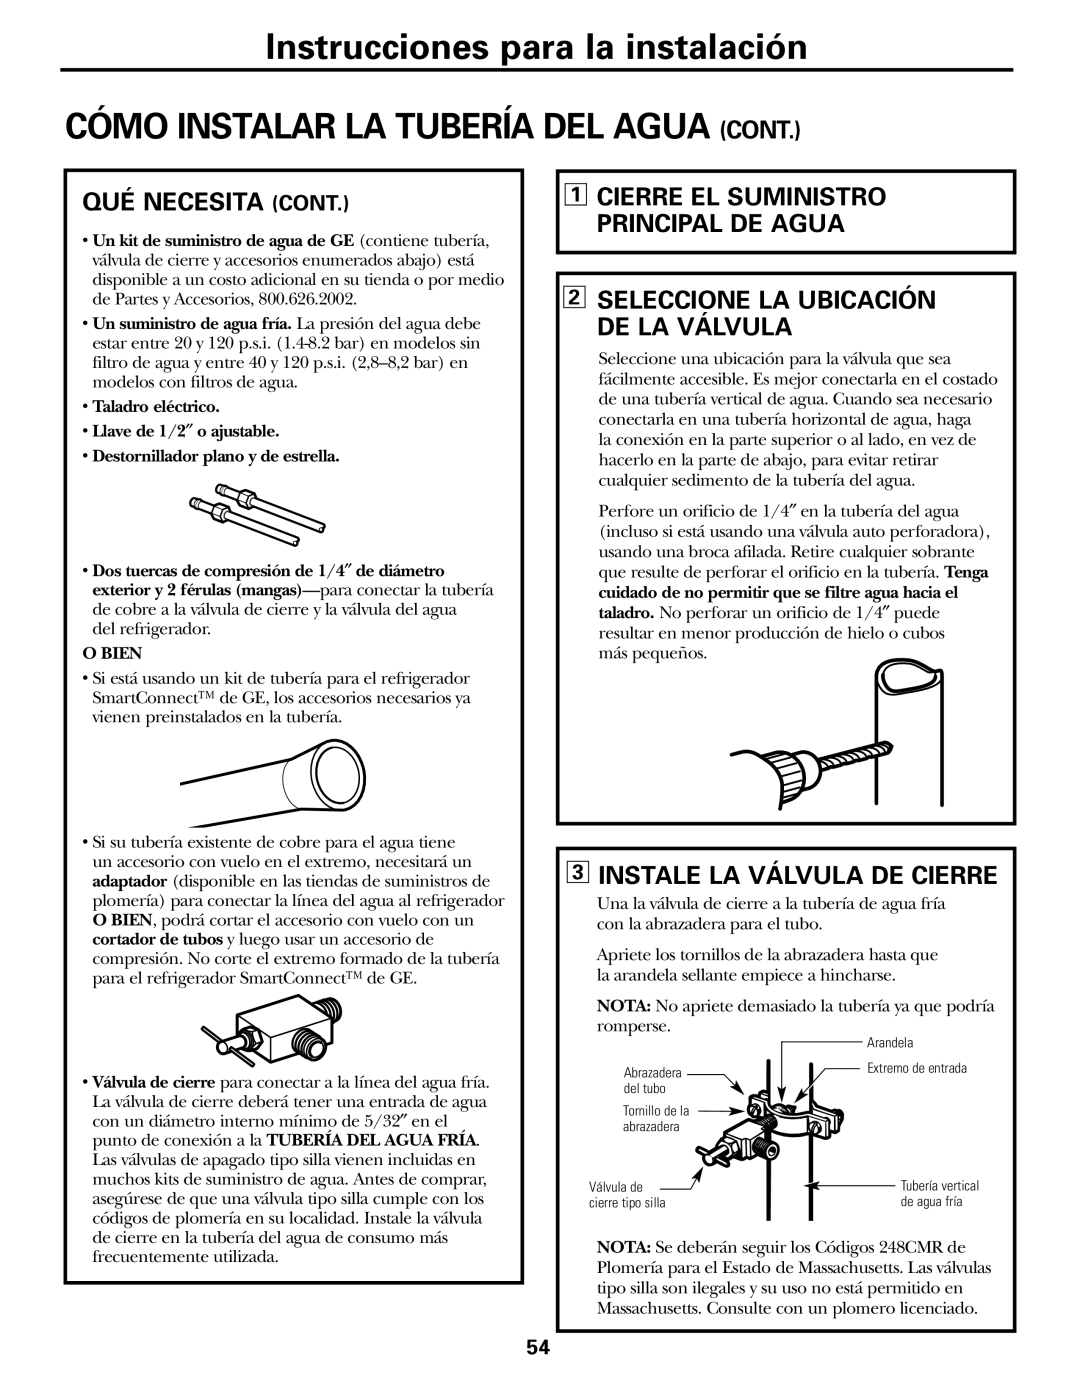 GE GSF25IGZWW manual Cómo Instalar La Tubería Del Agua Cont, Qué Necesita Cont, 3INSTALE LA VÁLVULA DE CIERRE 